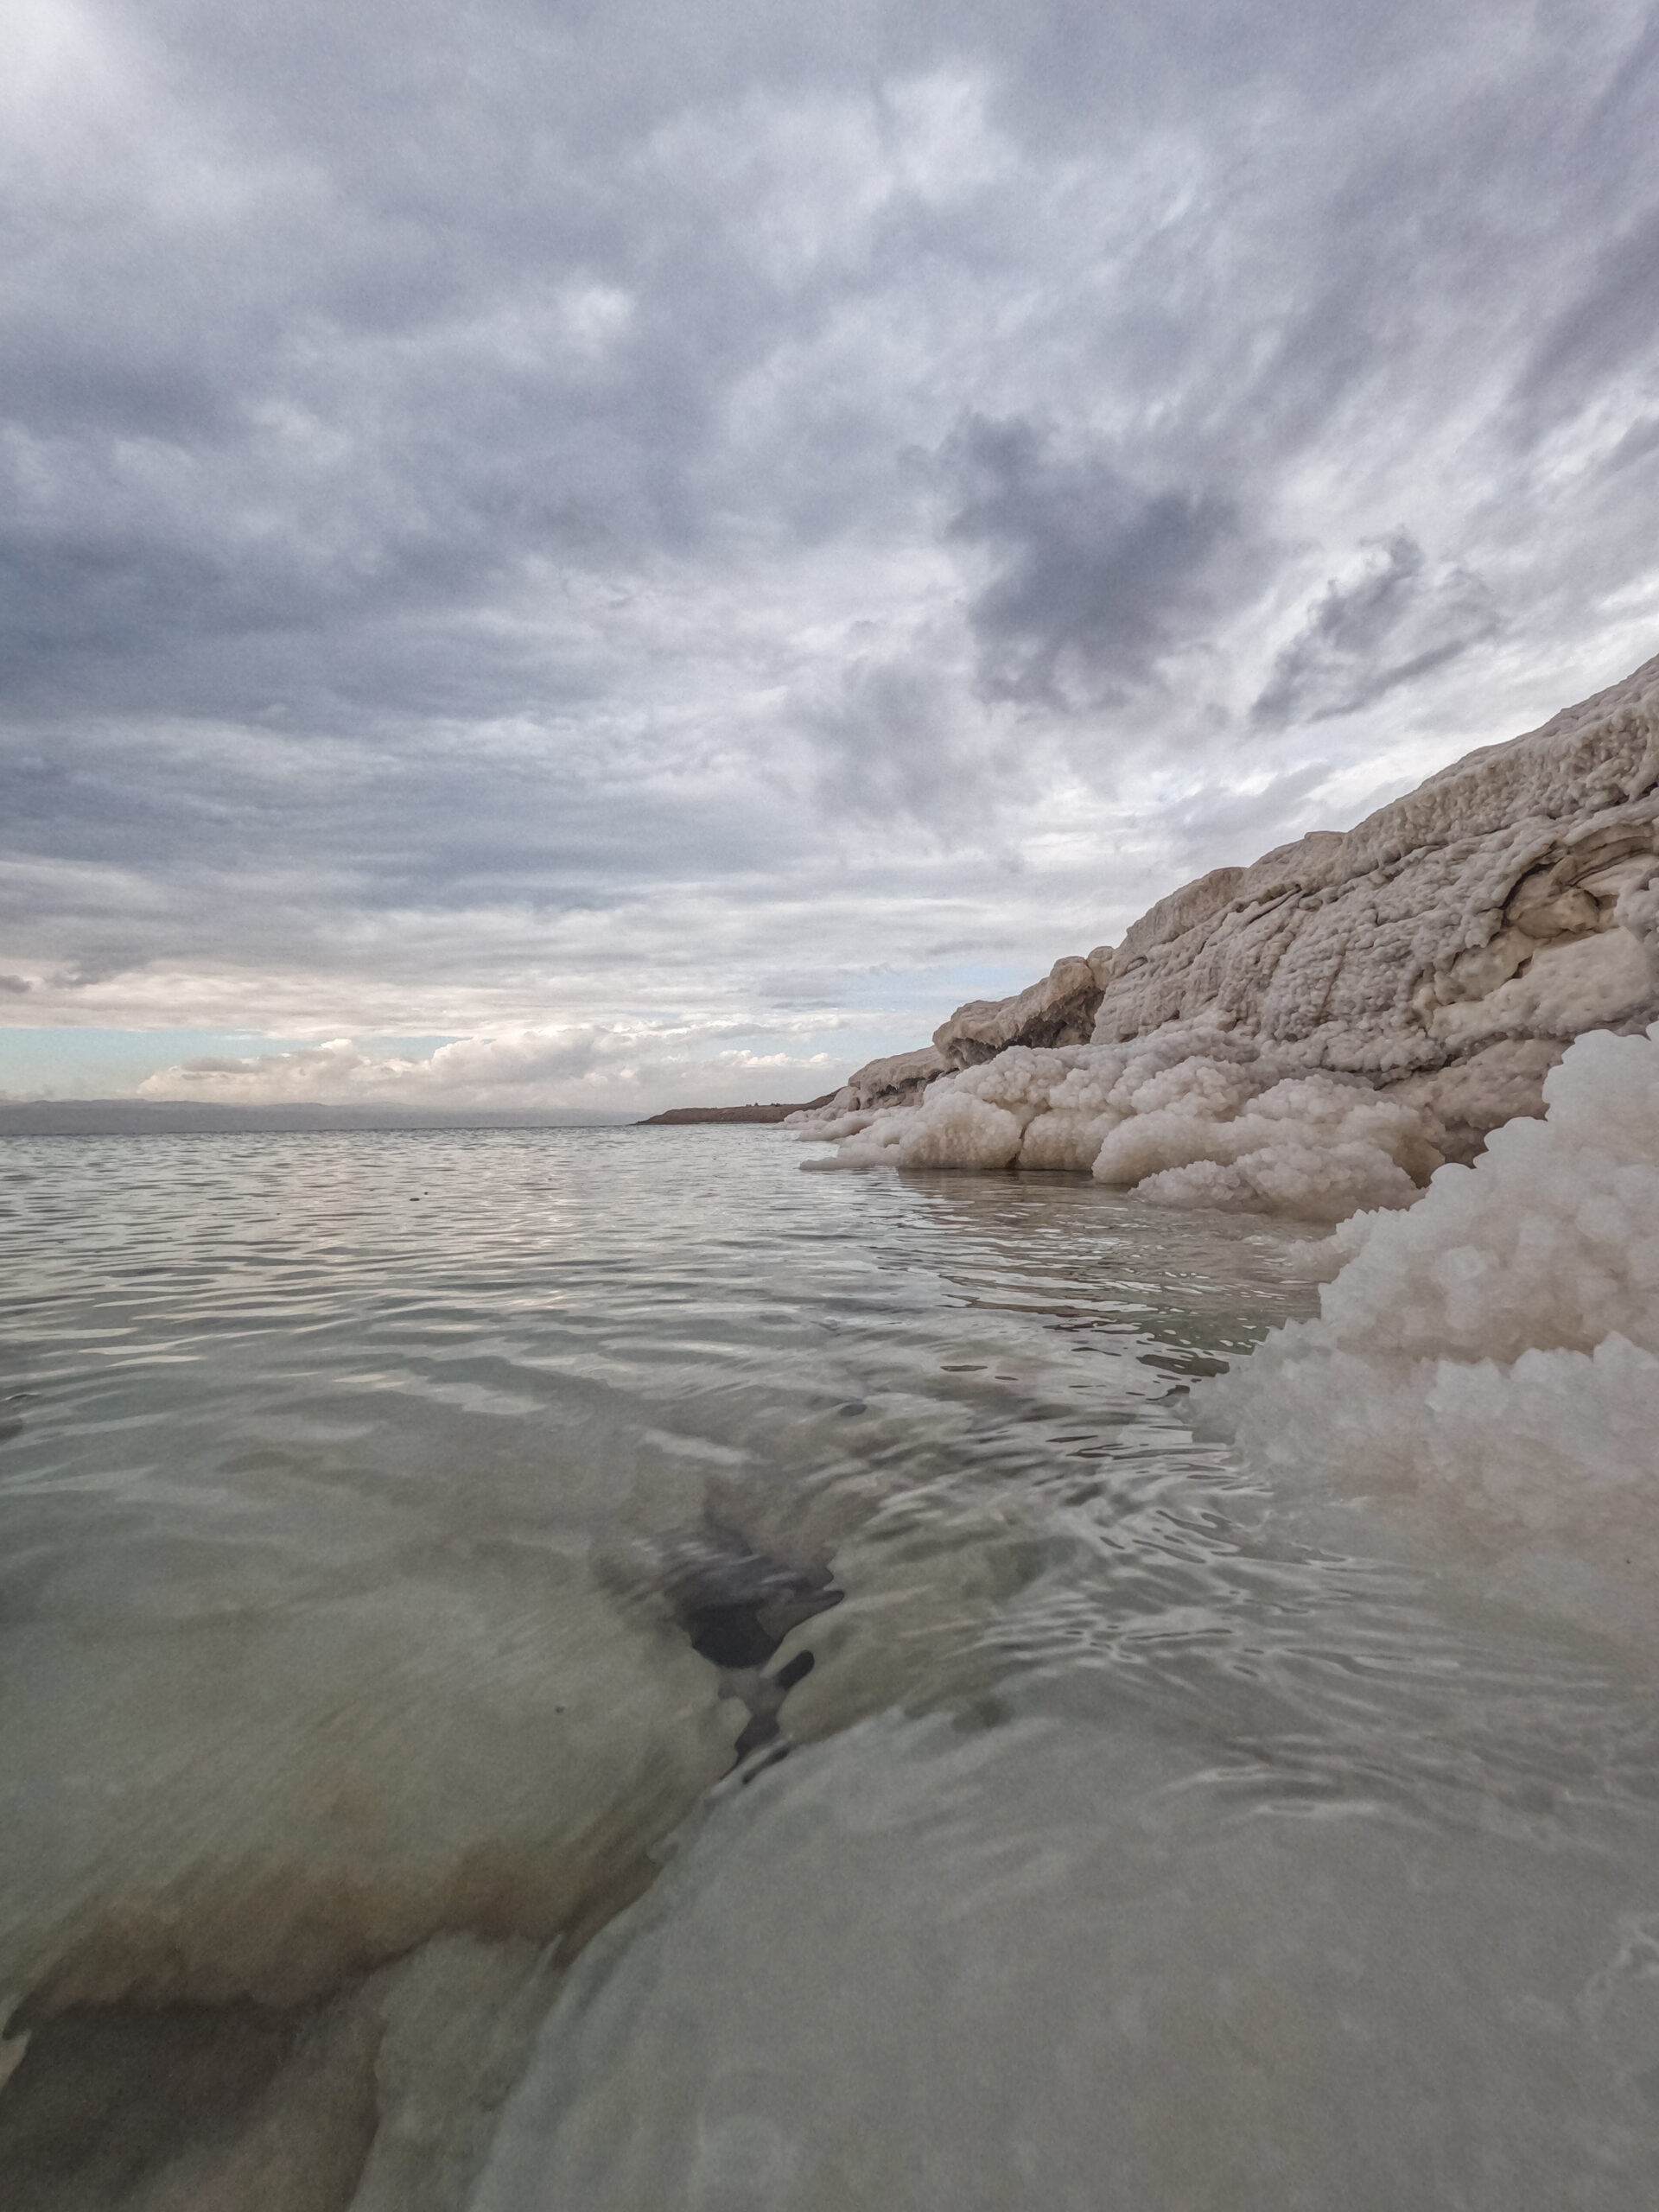 Mer morte - Dead sea - Jordanie - voyage en famille avec les enfants -Blog La Famille nomade